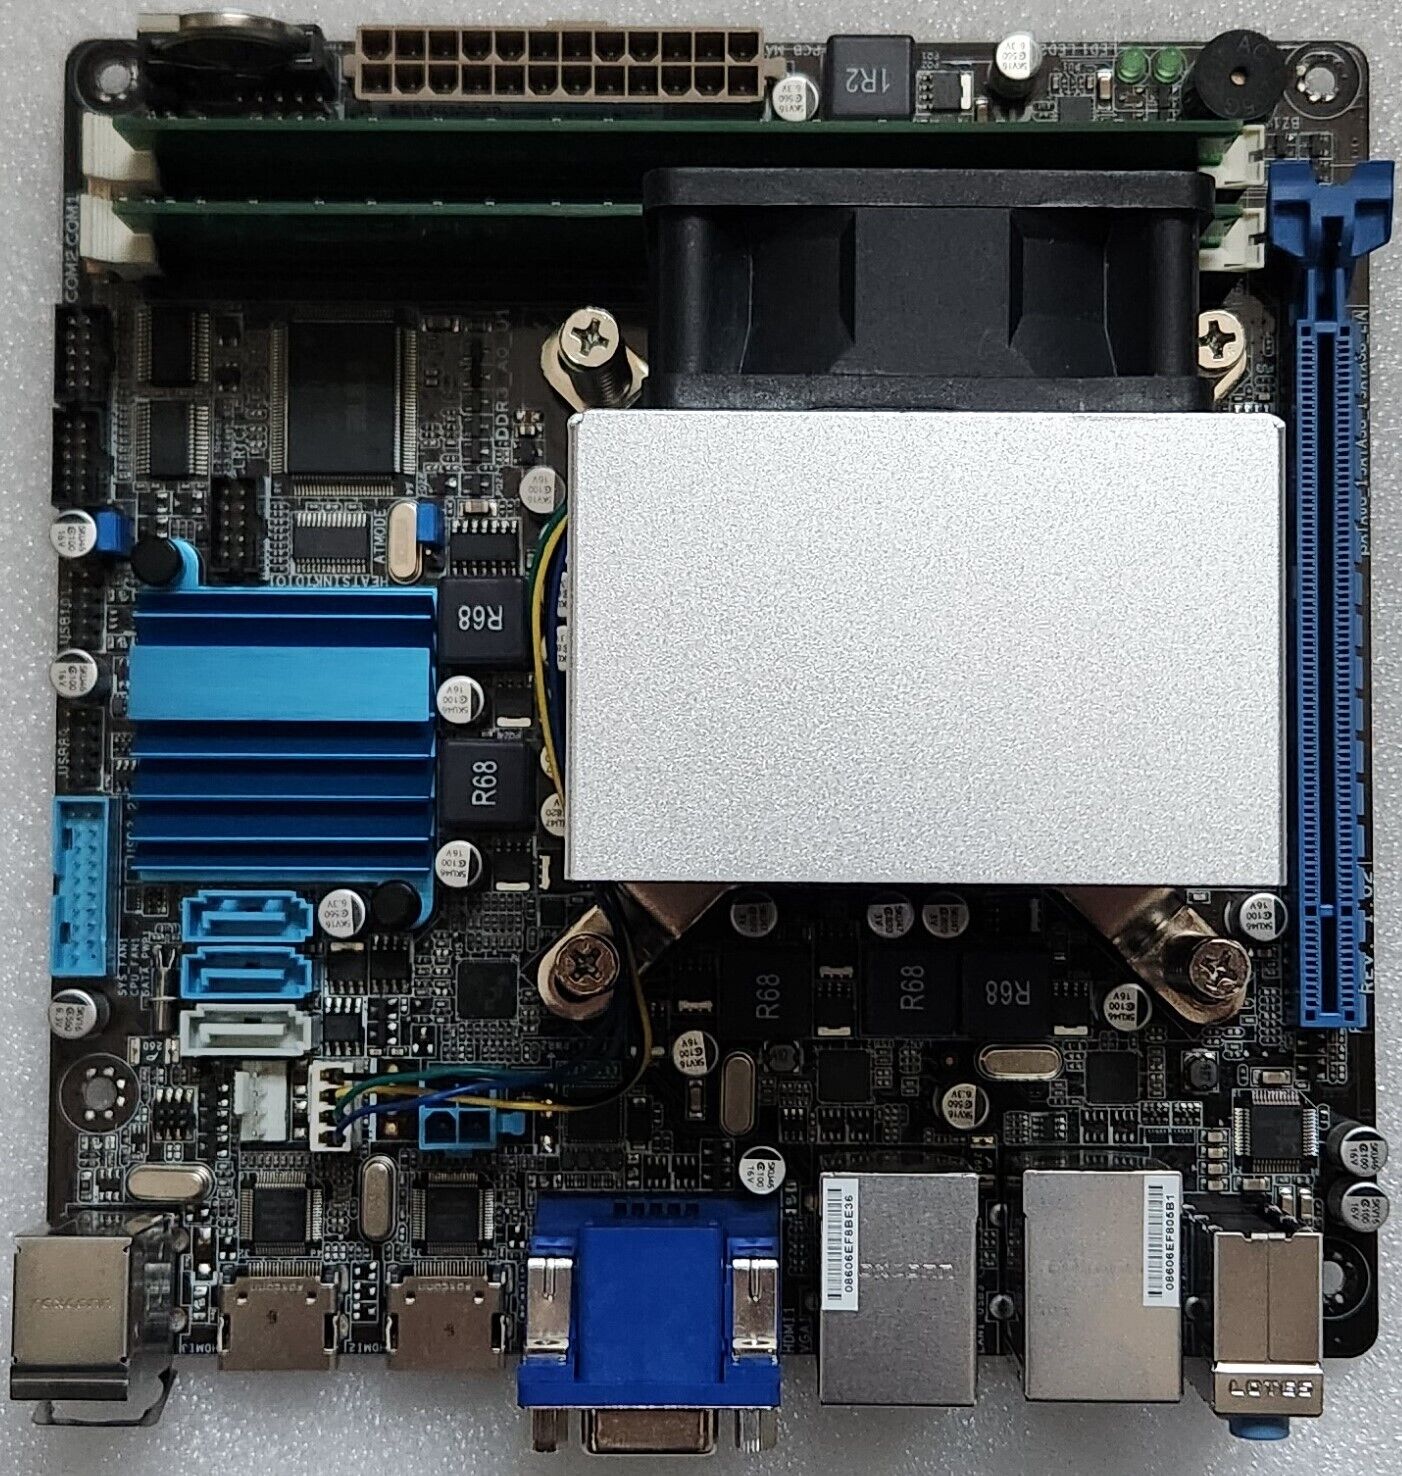 Aaeon EMB-B75A Mini-ITX Motherboard w/ Intel i3-3220 & 4GB DDR3 Crucial Memory